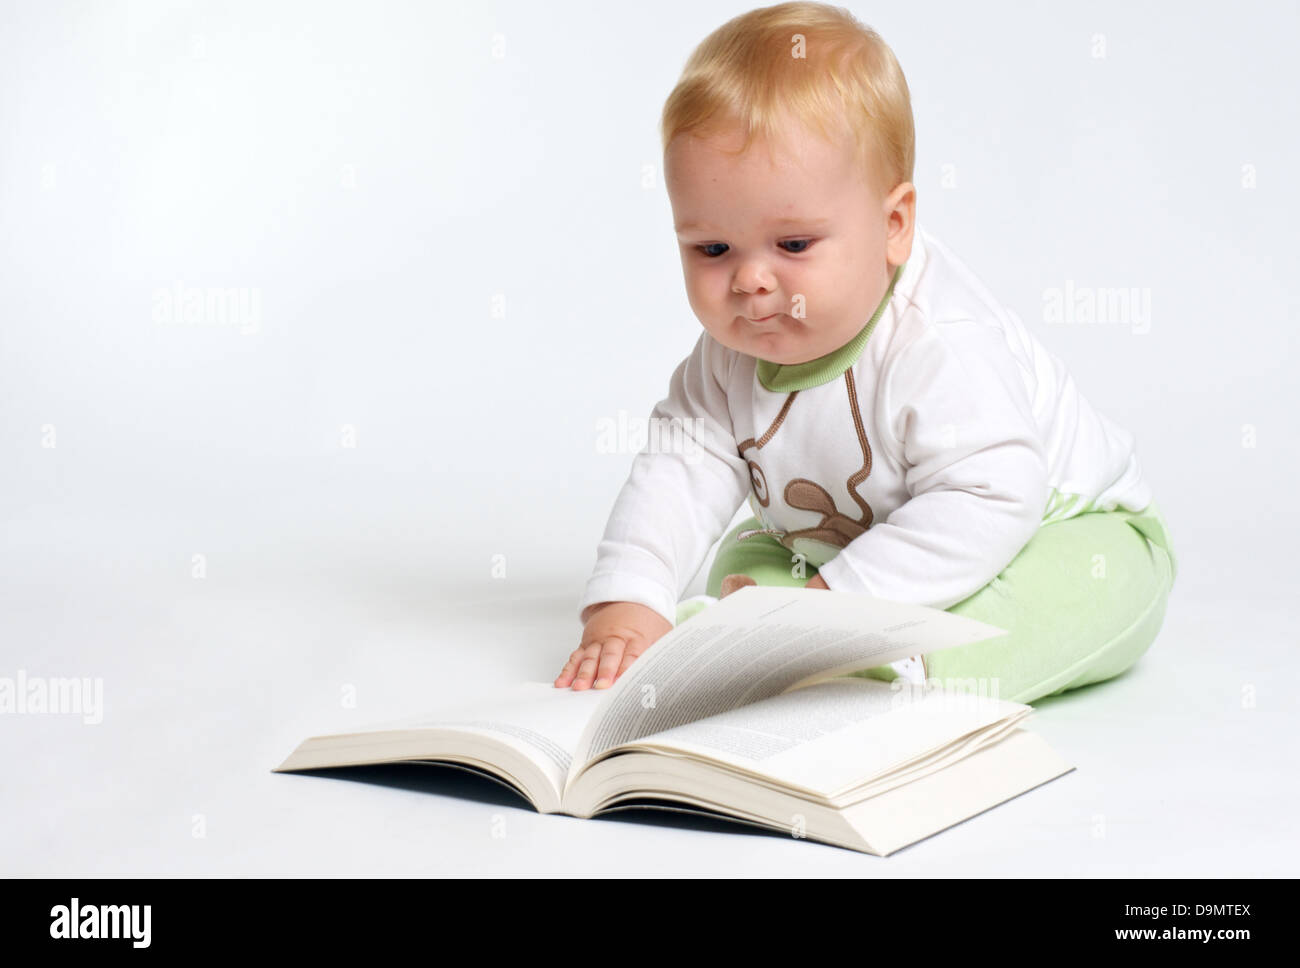 Baby-sitting blonde intelligente et la lecture d'un livre Banque D'Images